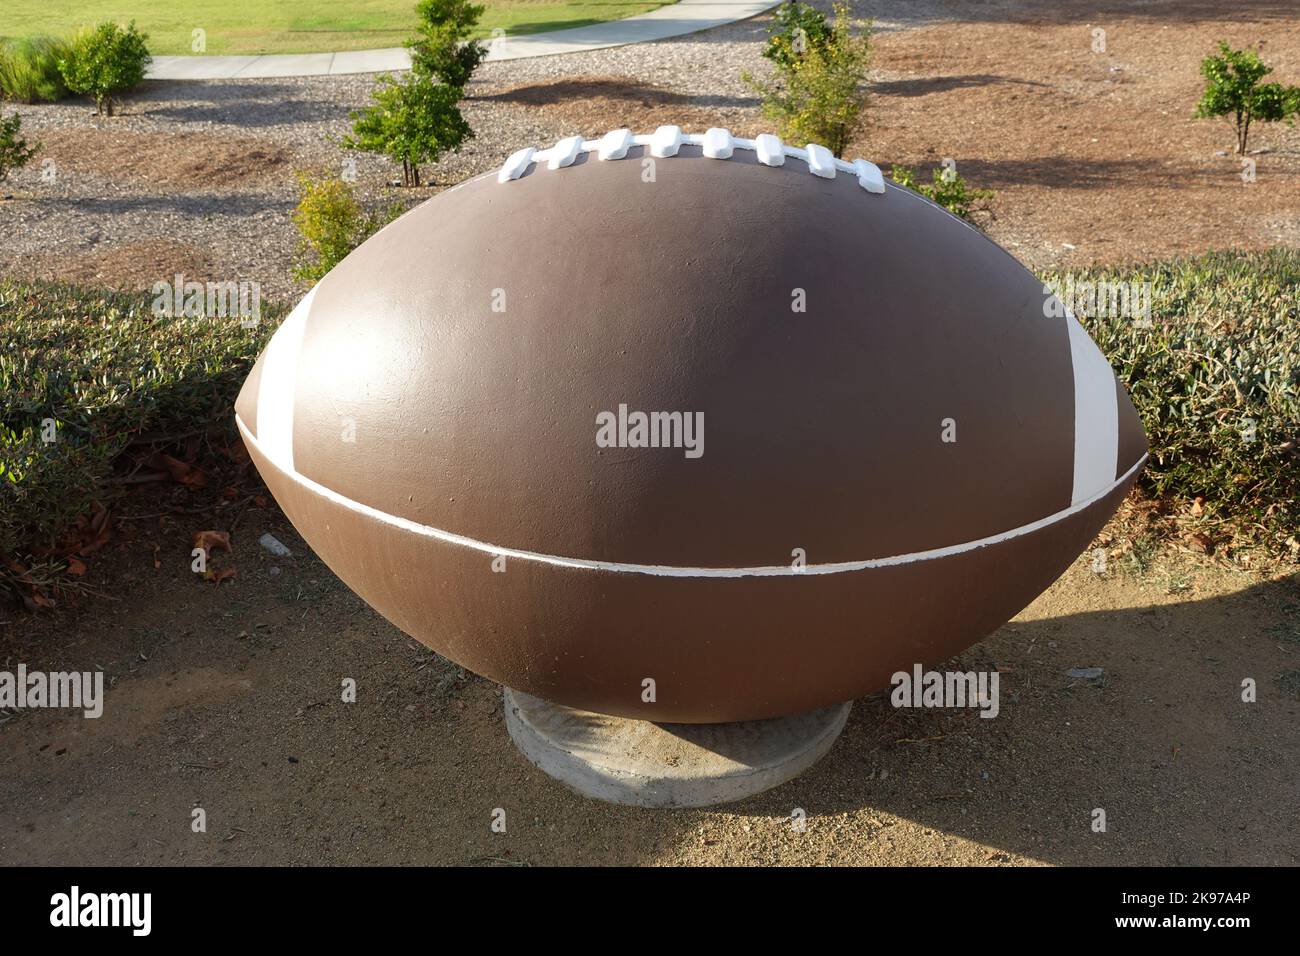 Un football en béton pour l'aménagement paysager d'un parc sportif public. Banque D'Images